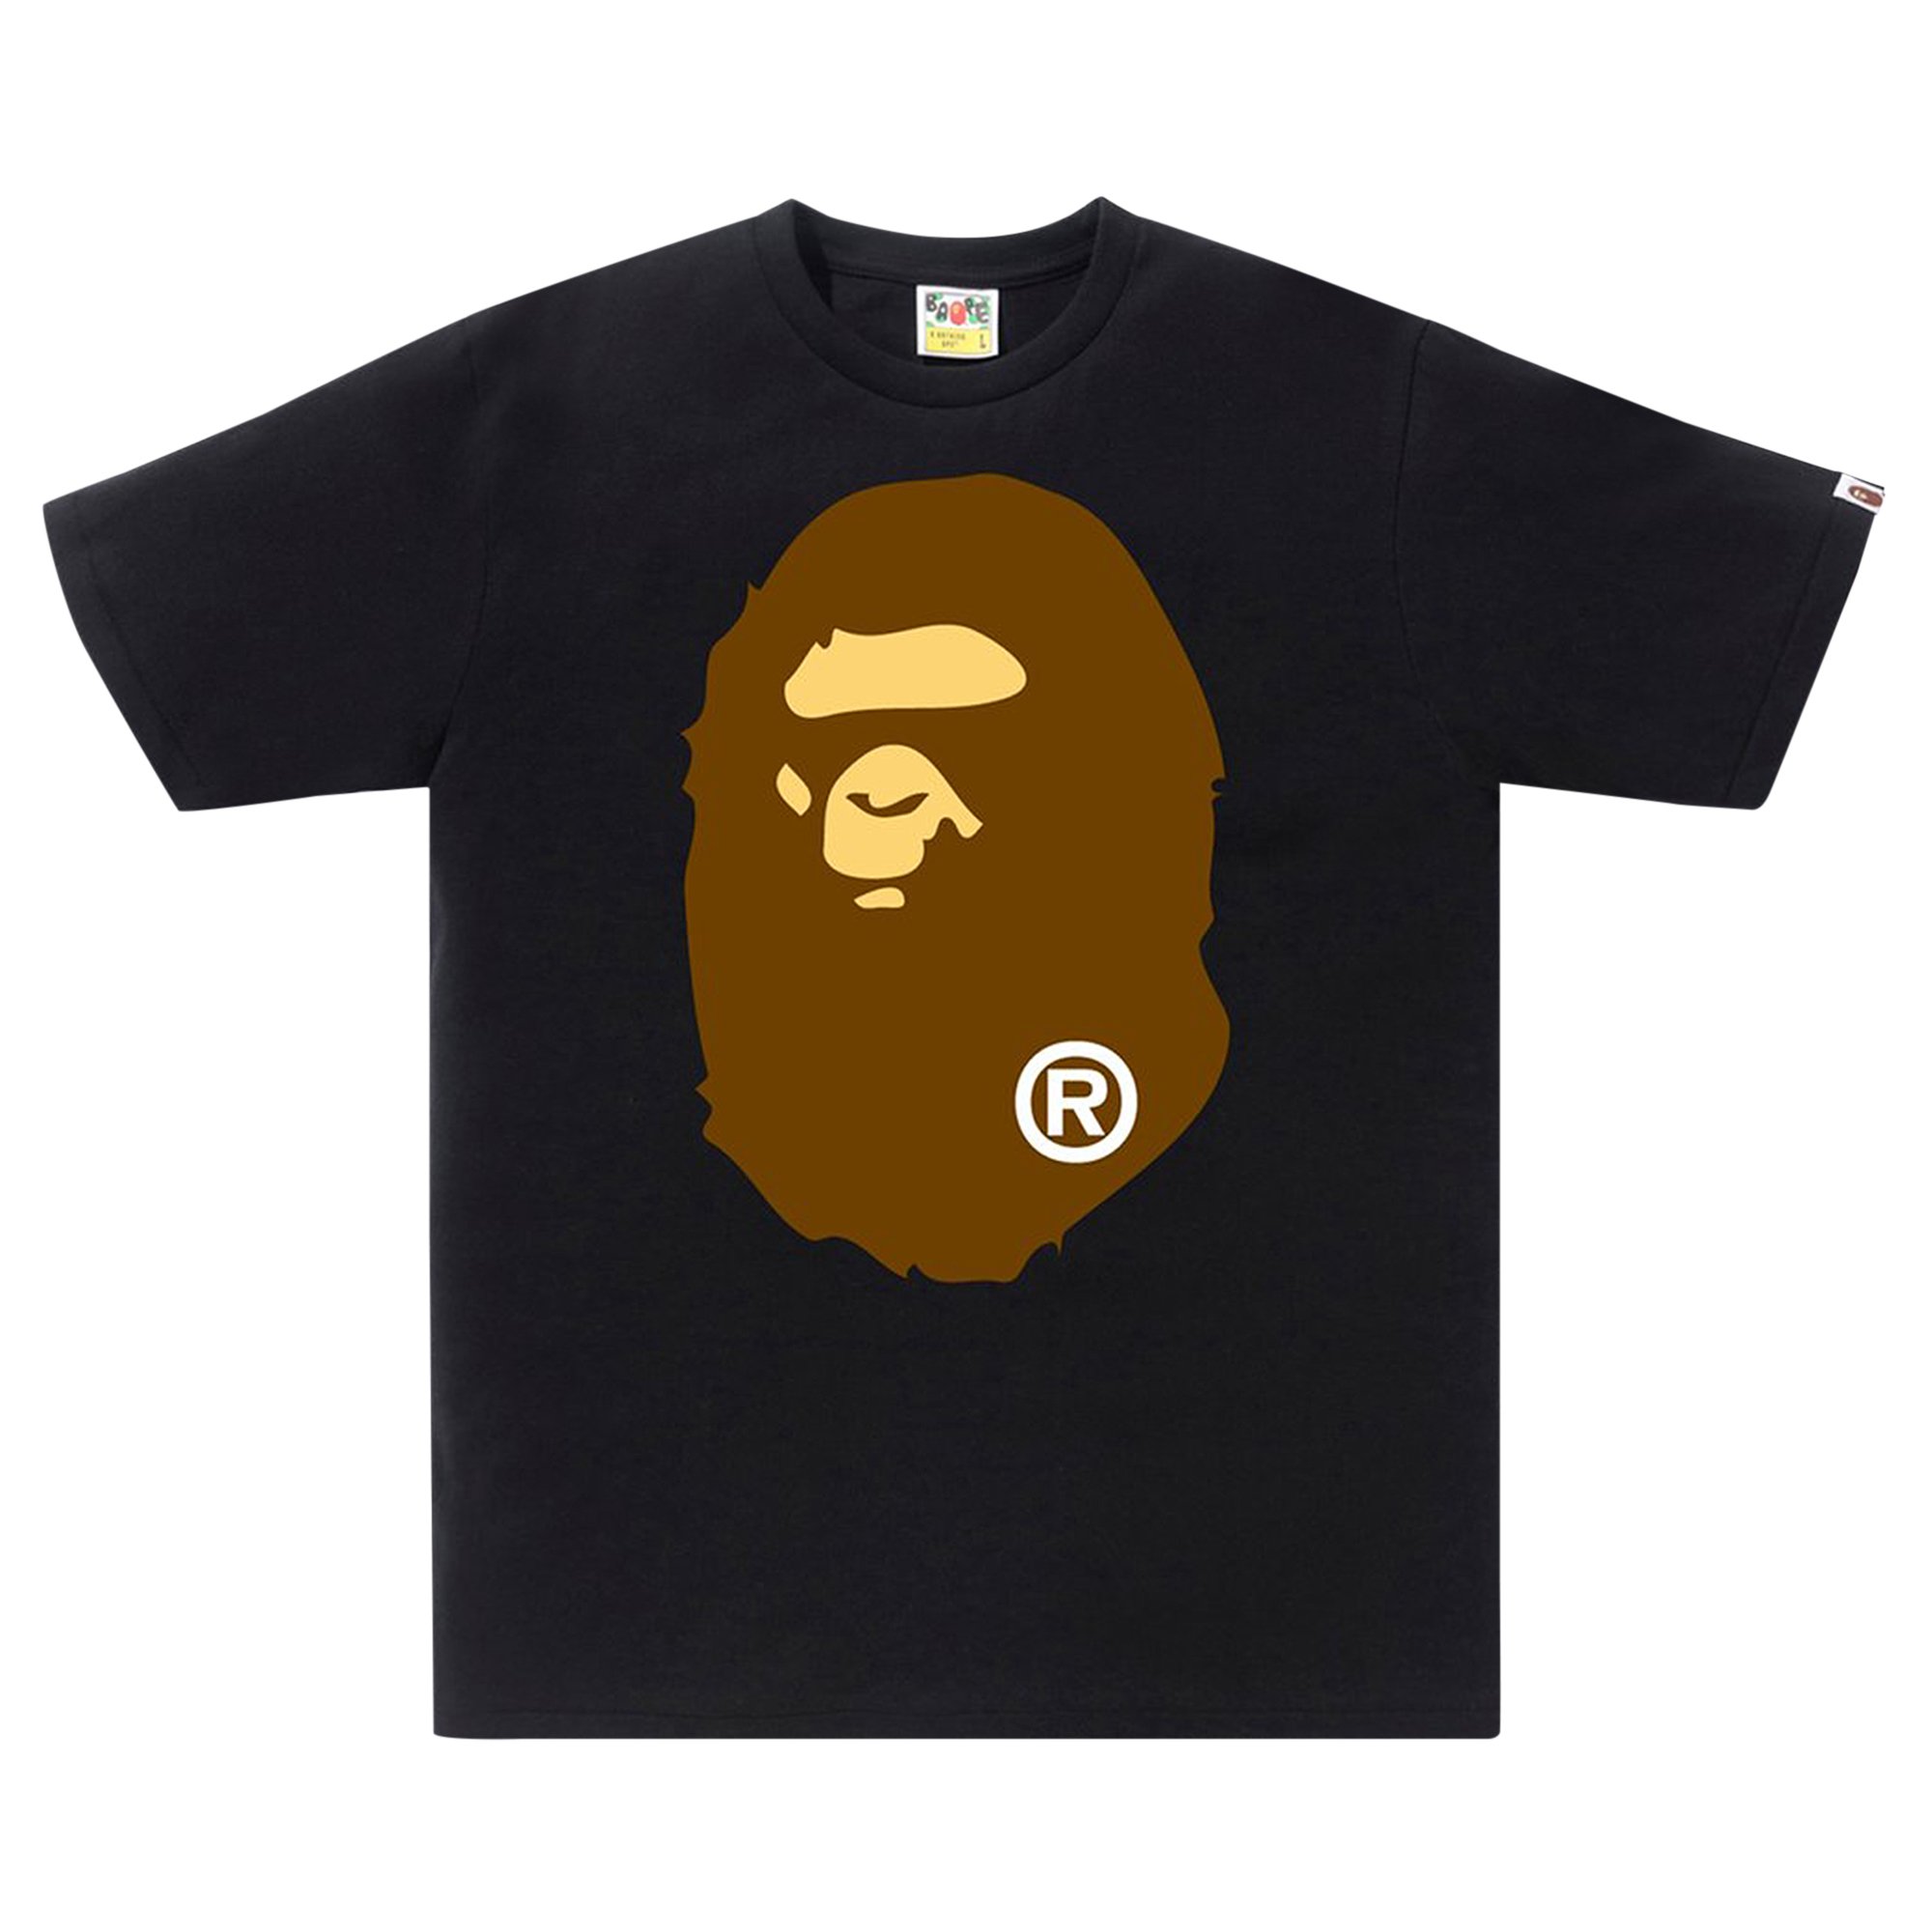 Футболка BAPE Big Ape Head, черная 2021 new 3d printed t shirt with exquisite skull pattern street fashion best selling t shirt hot selling item